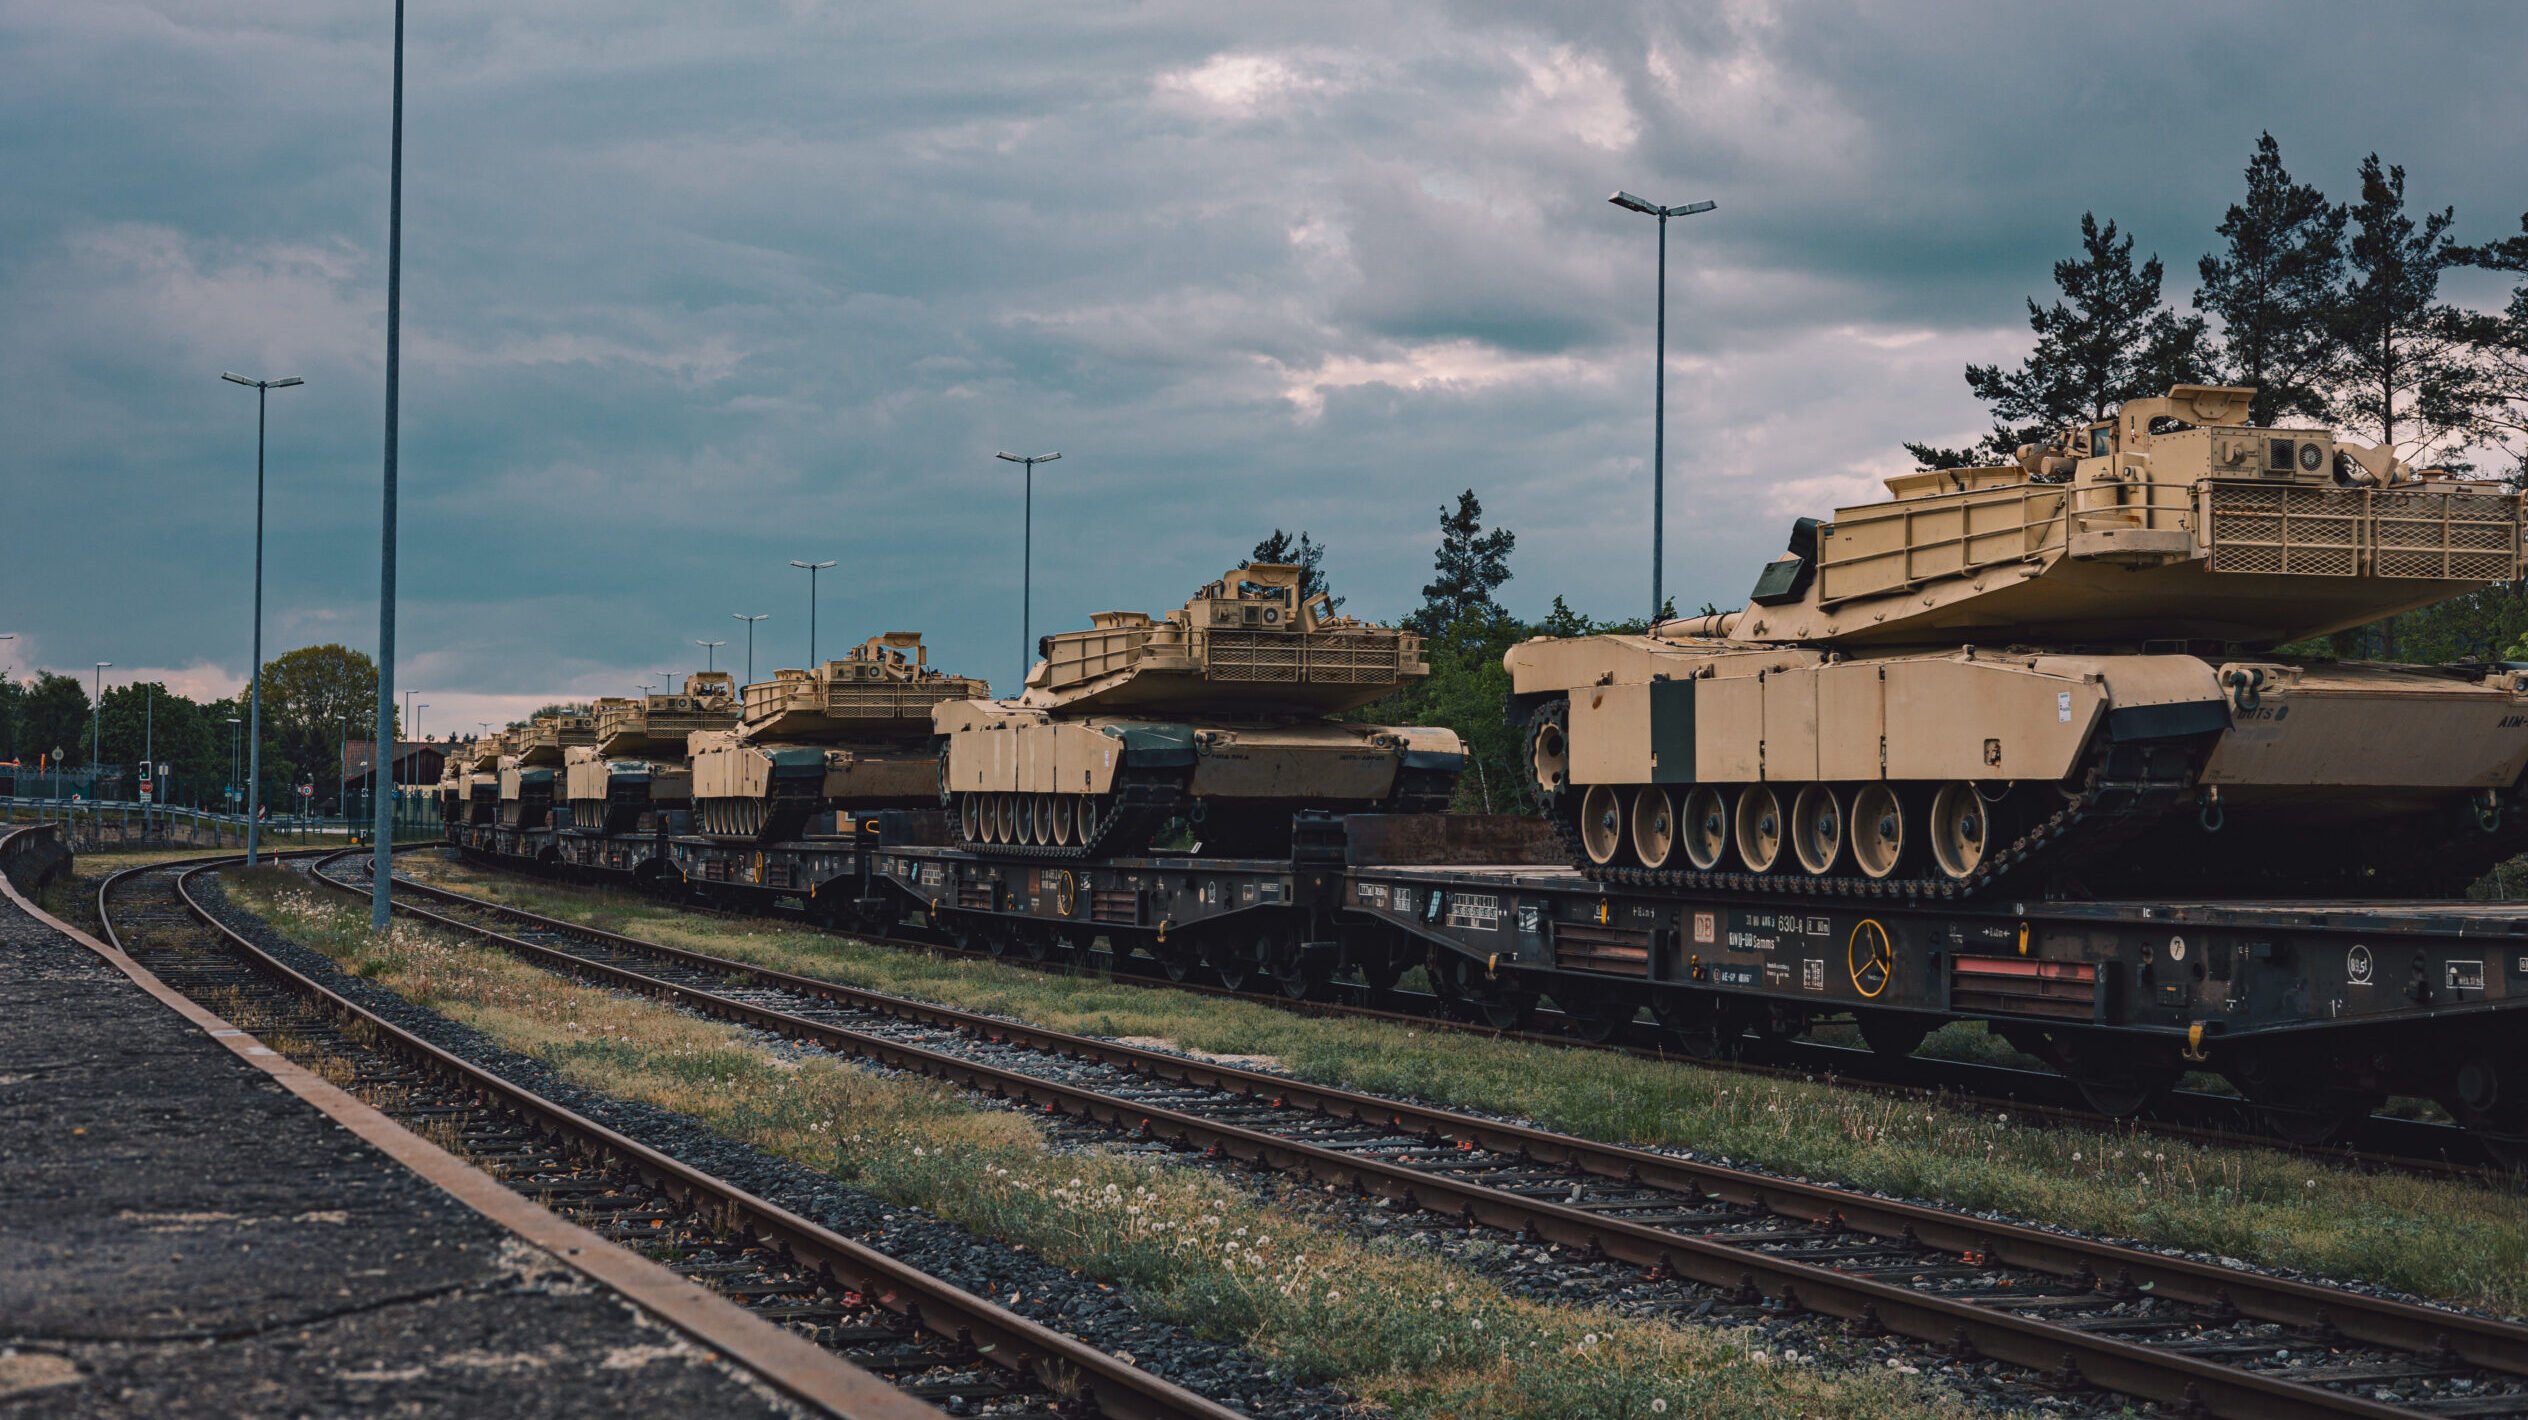 Tanks in the Urban Battle of Suez City - Modern War Institute